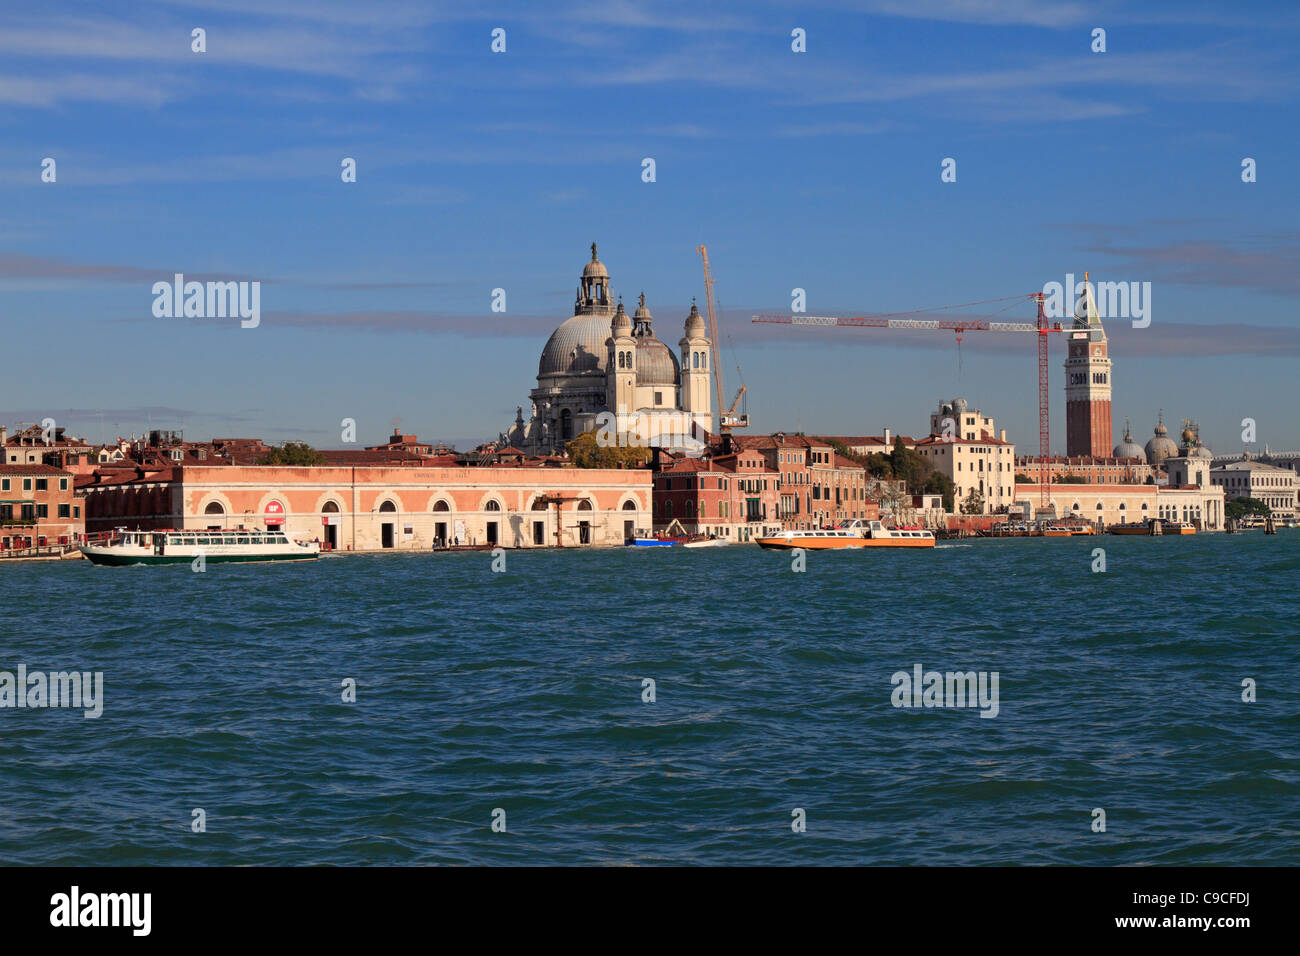 Zattere waterfront, Emporio dei Sali and Basilica di Santa Maria della Salute on Dorsoduro from Giudecca, Venice, Italy, Europe. Stock Photo